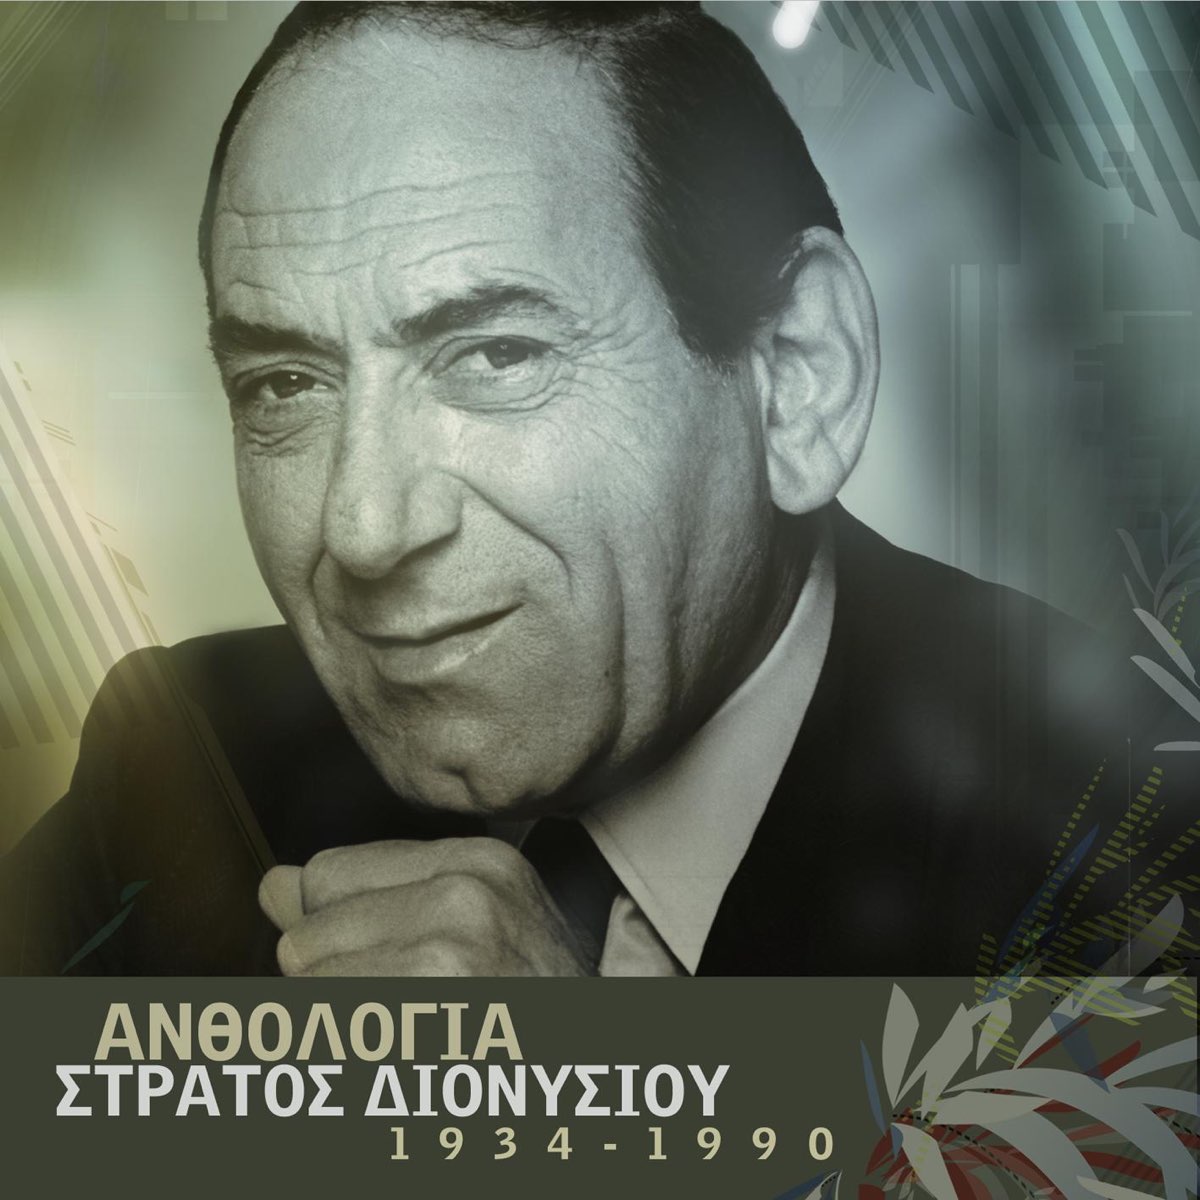 Ανθολογία - Στράτος Διονυσίου - Album by Stratos Dionysiou - Apple Music